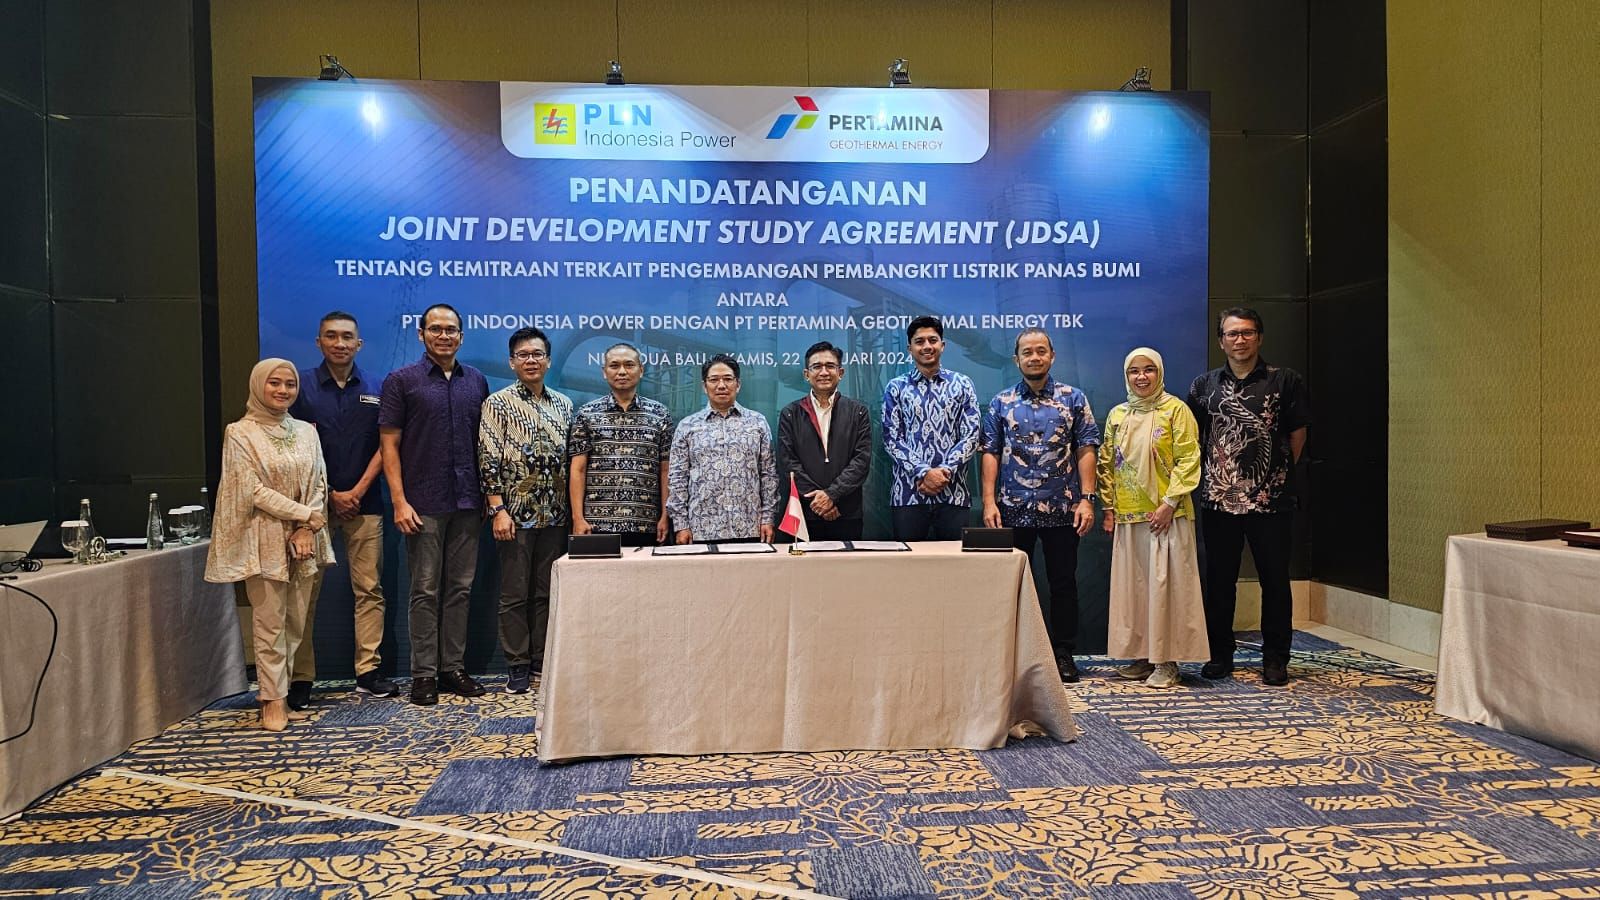 PGE menjalin kemitraan strategis dengan PT PLN Indonesia Power untuk mempercepat pengembangan potensi panas bumi di Indonesia. Sumber: PGE 